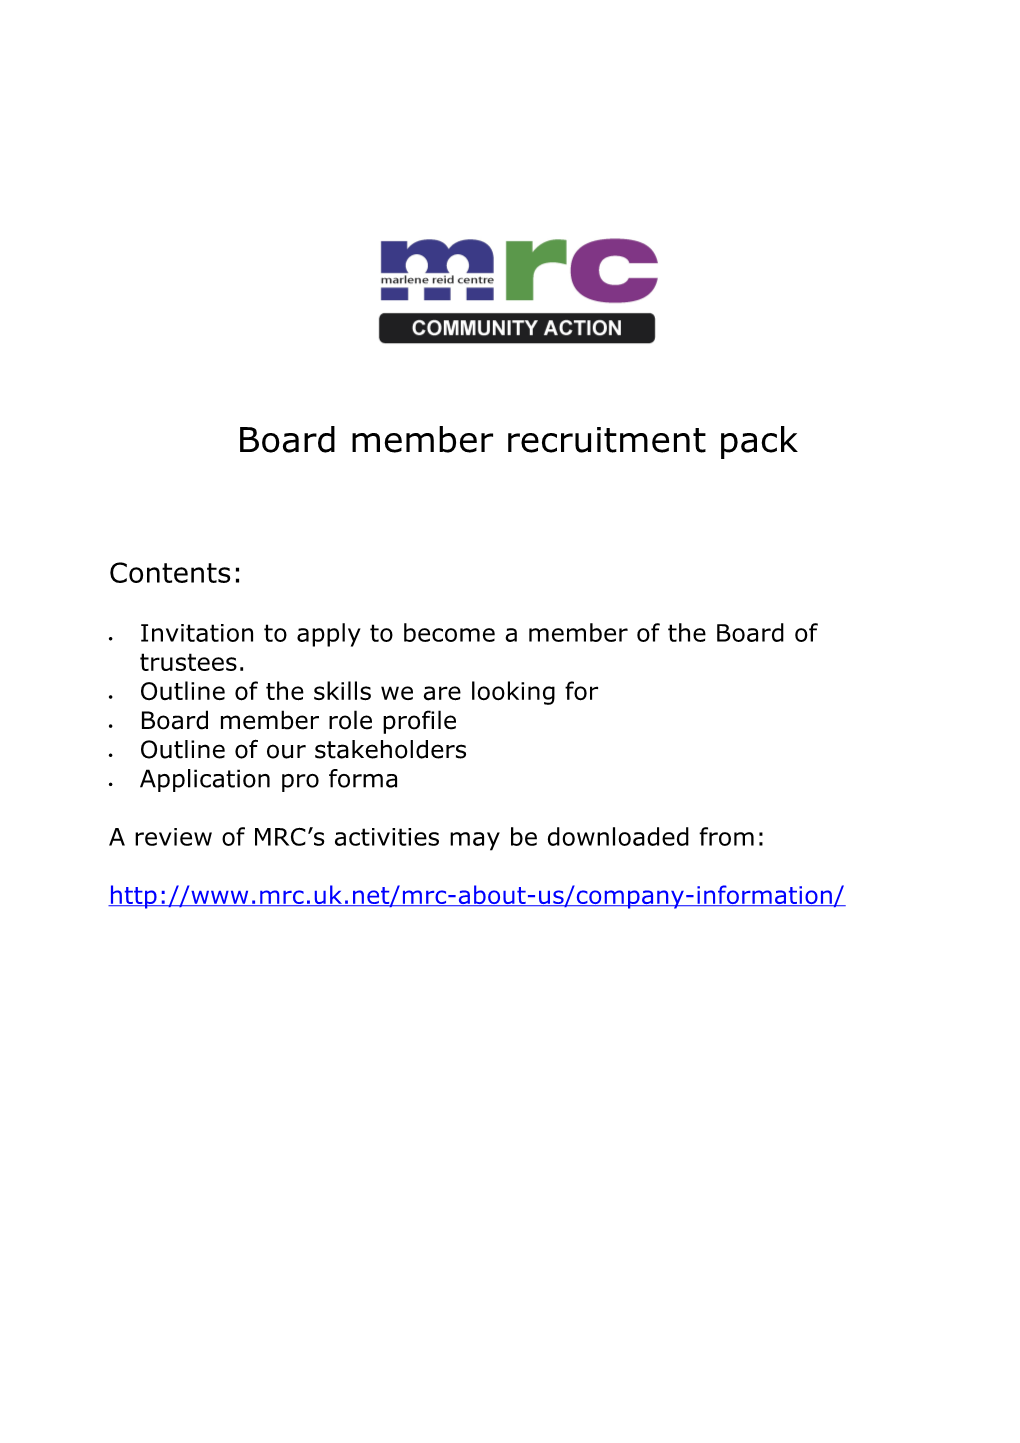 Board Member Recruitment Pack